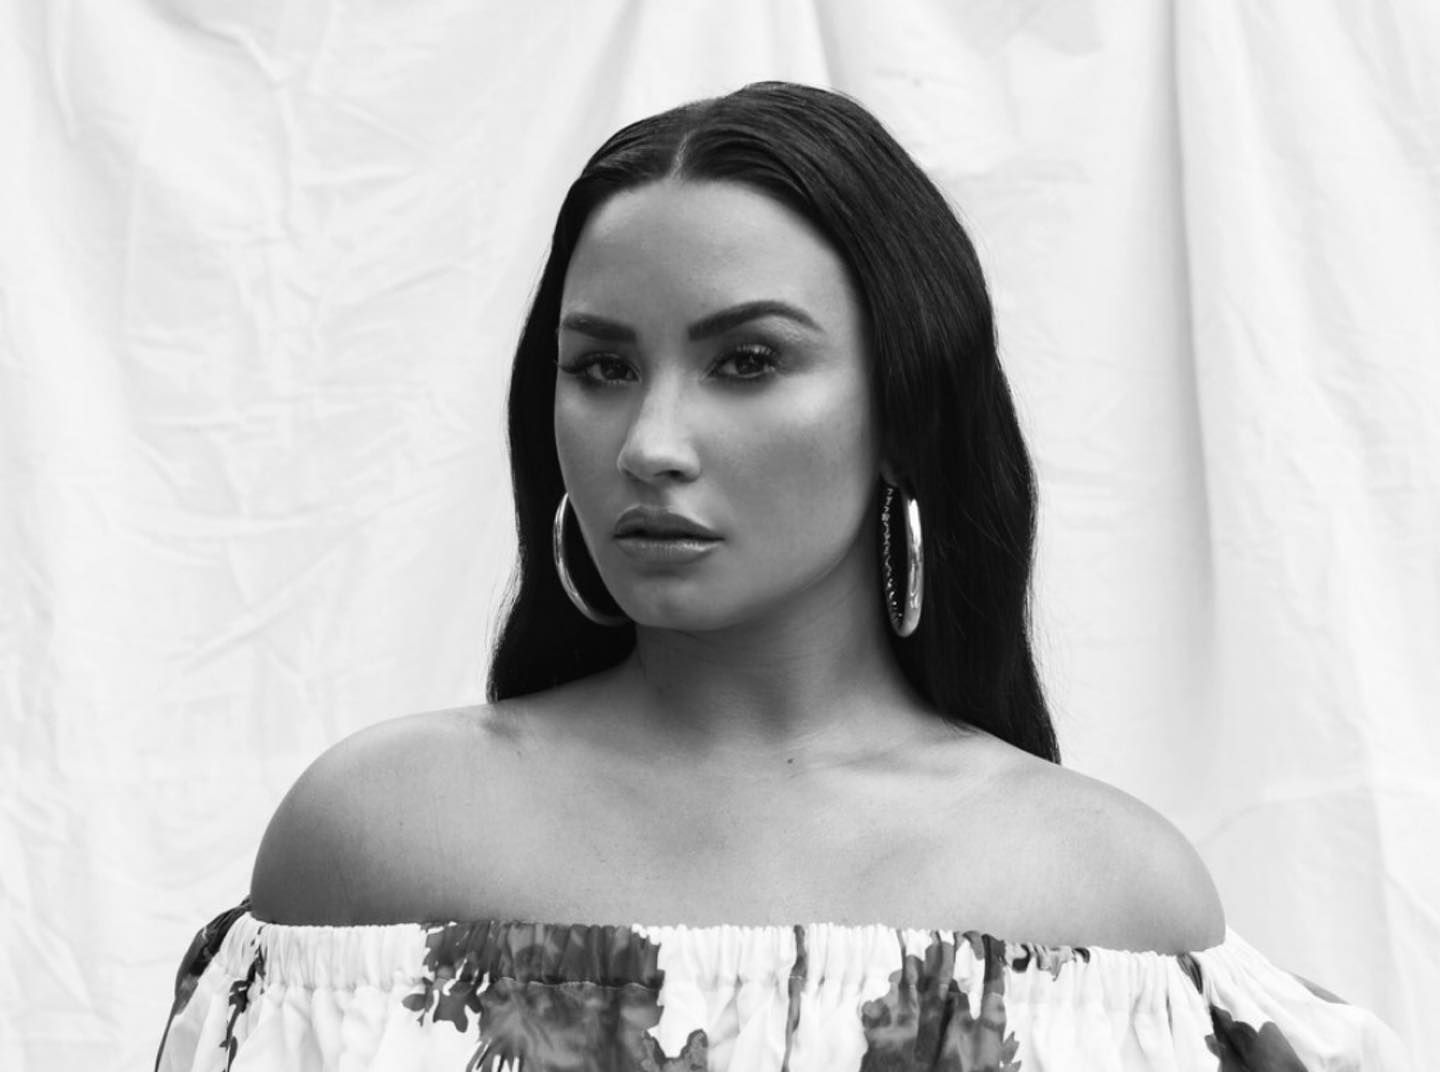 Dancing with the Devil… the Art of Starting Over de Demi Lovato y la serenidad